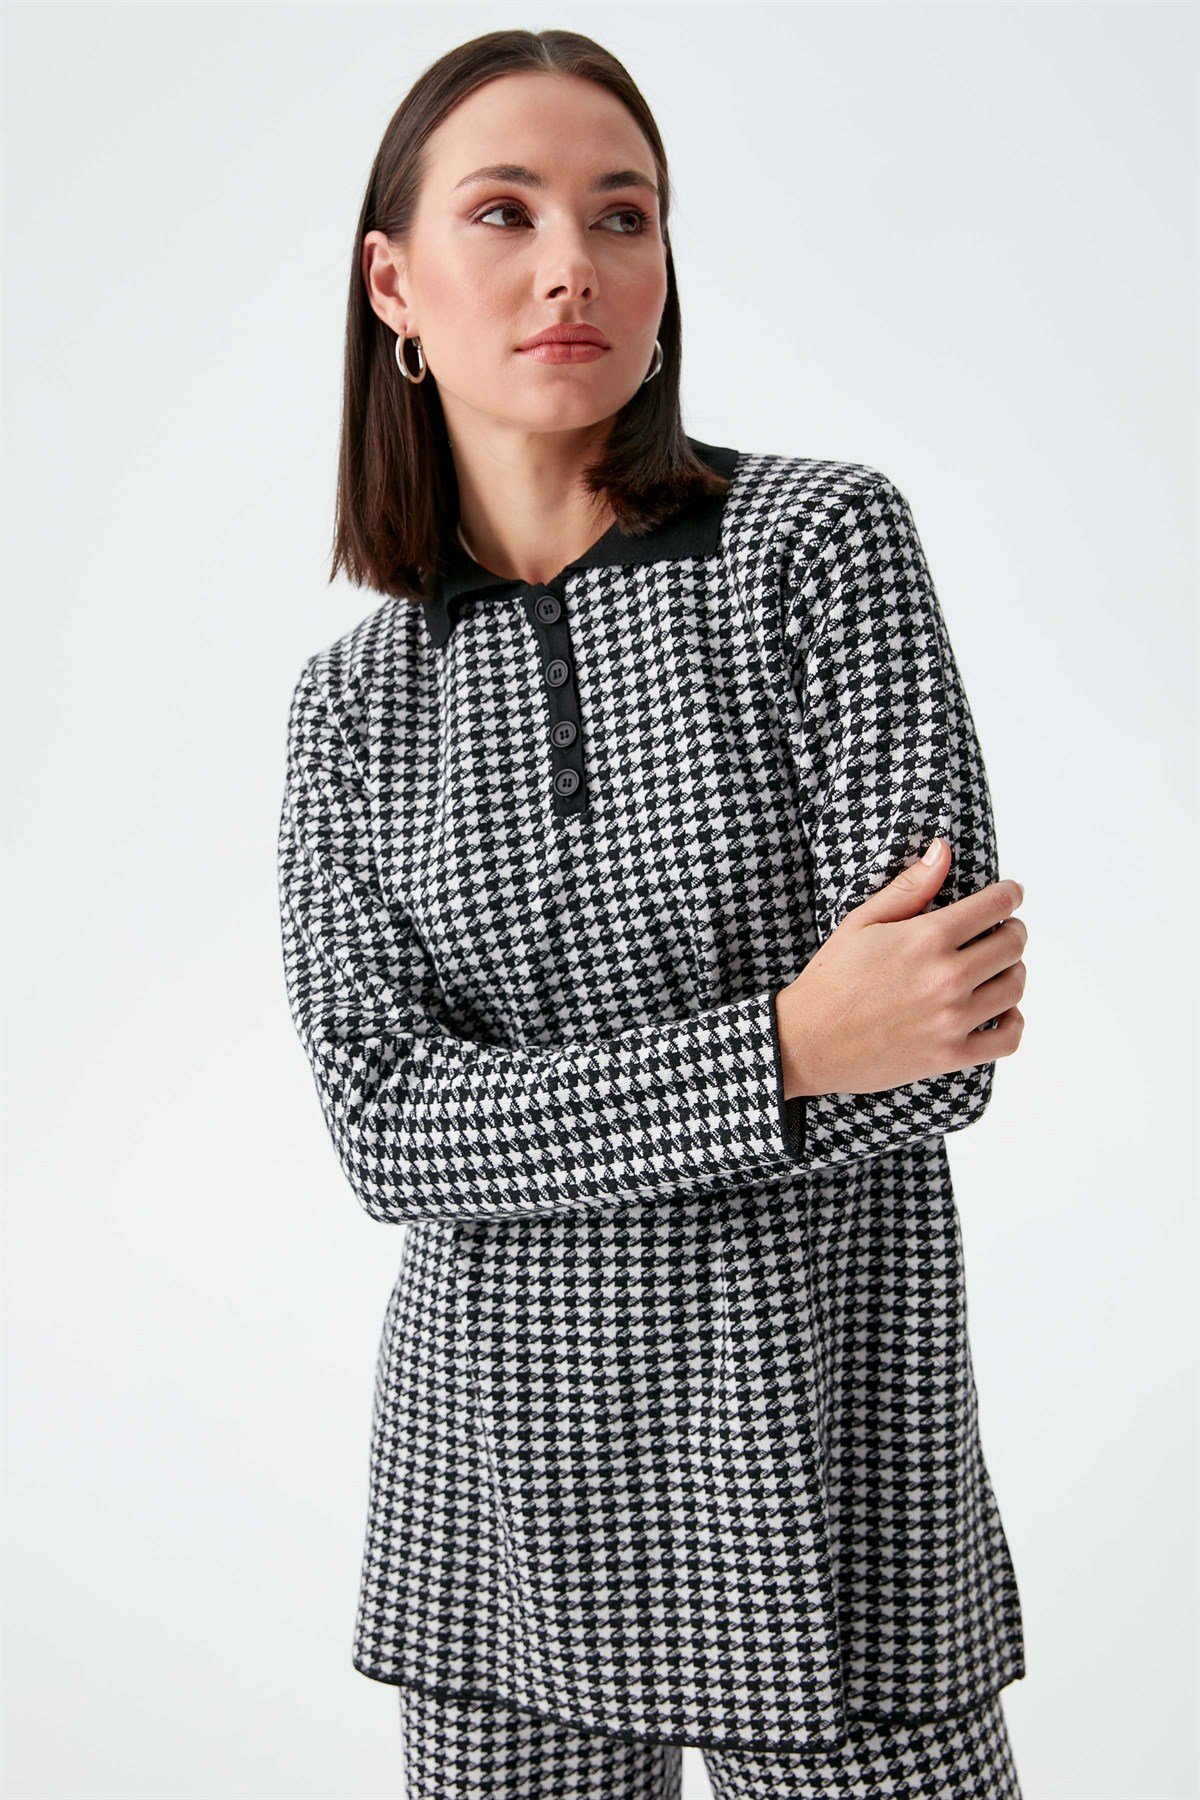 Polo Neck Crowbar Pattern Knitwear Sweater - Black